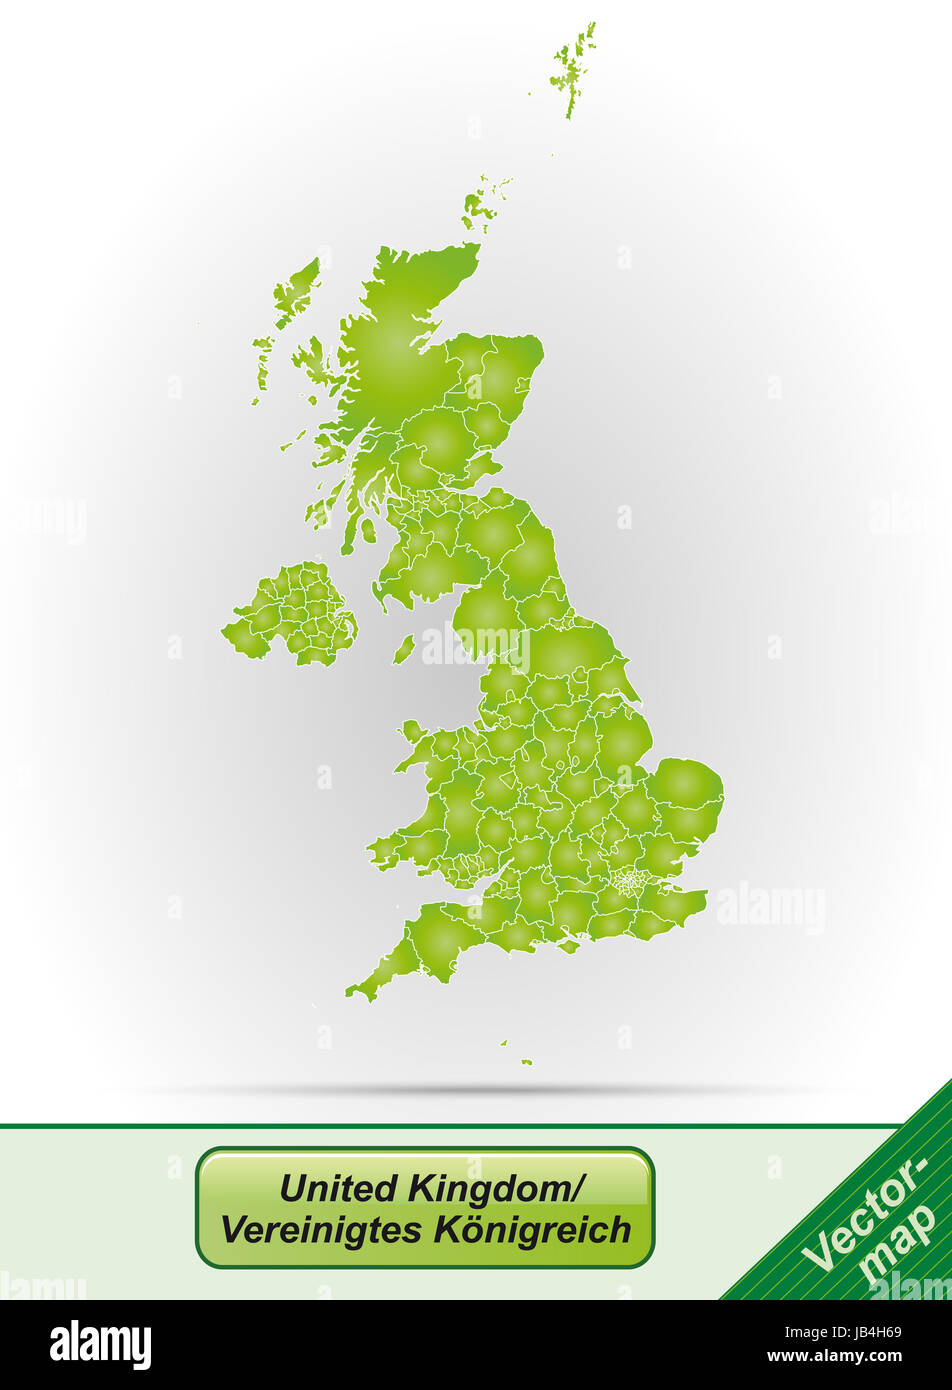 Vereinigtes Königreich in Europa als Grenzkarte Mit Grenzen in Grün. Durch Die Ansprechende Gestaltung Fügt Sich Die Karte Perfekt in Ihr Vorhaben Ein. Stockfoto